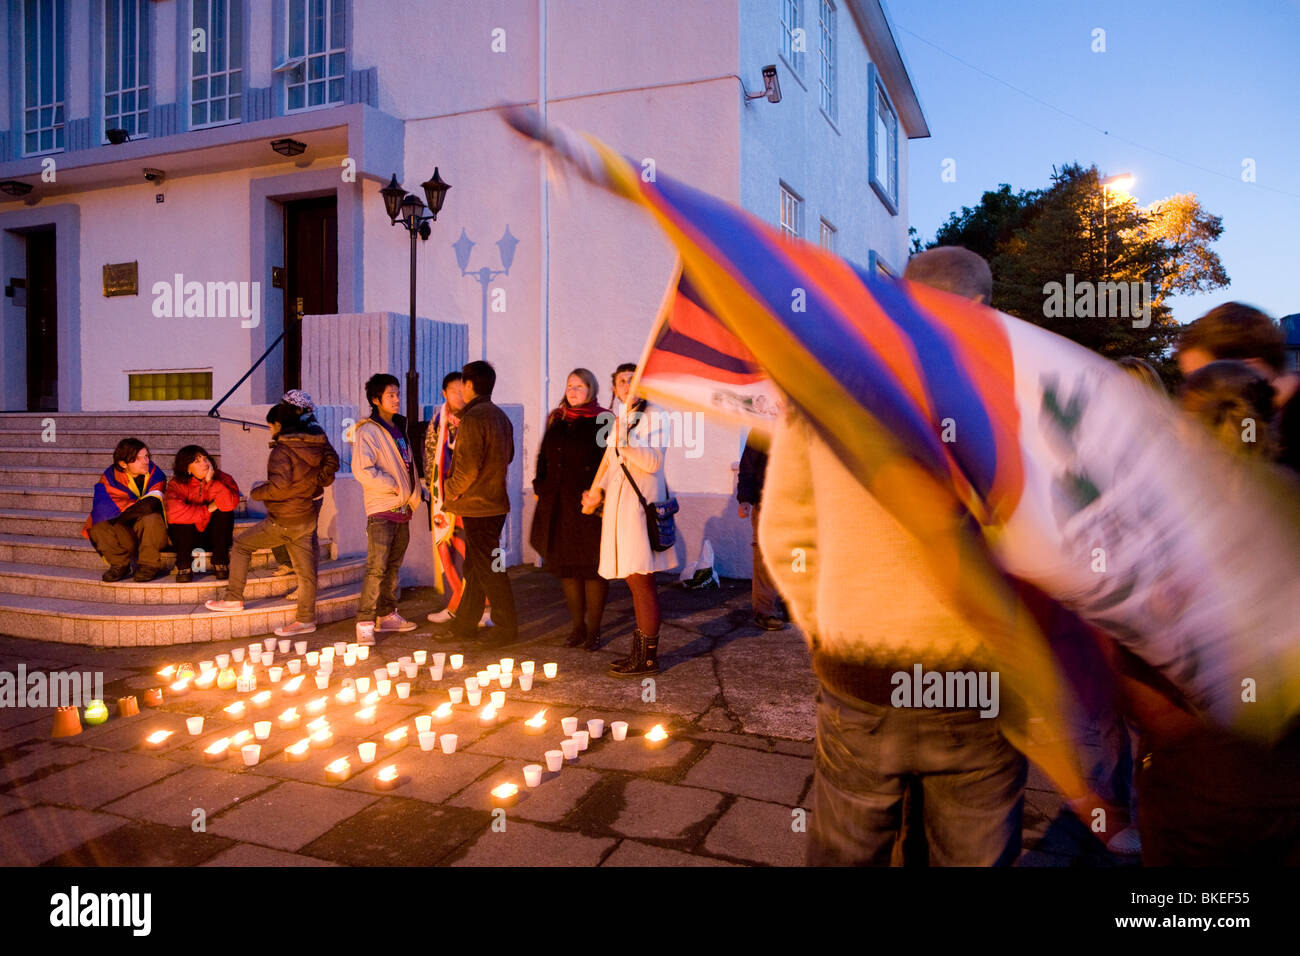 Tibeter und Isländer mit vereinten Kräften und Protest gegen die chinesische Besetzung Tibets.  Chinesische Botschaft, Reykjavik, Island. Stockfoto